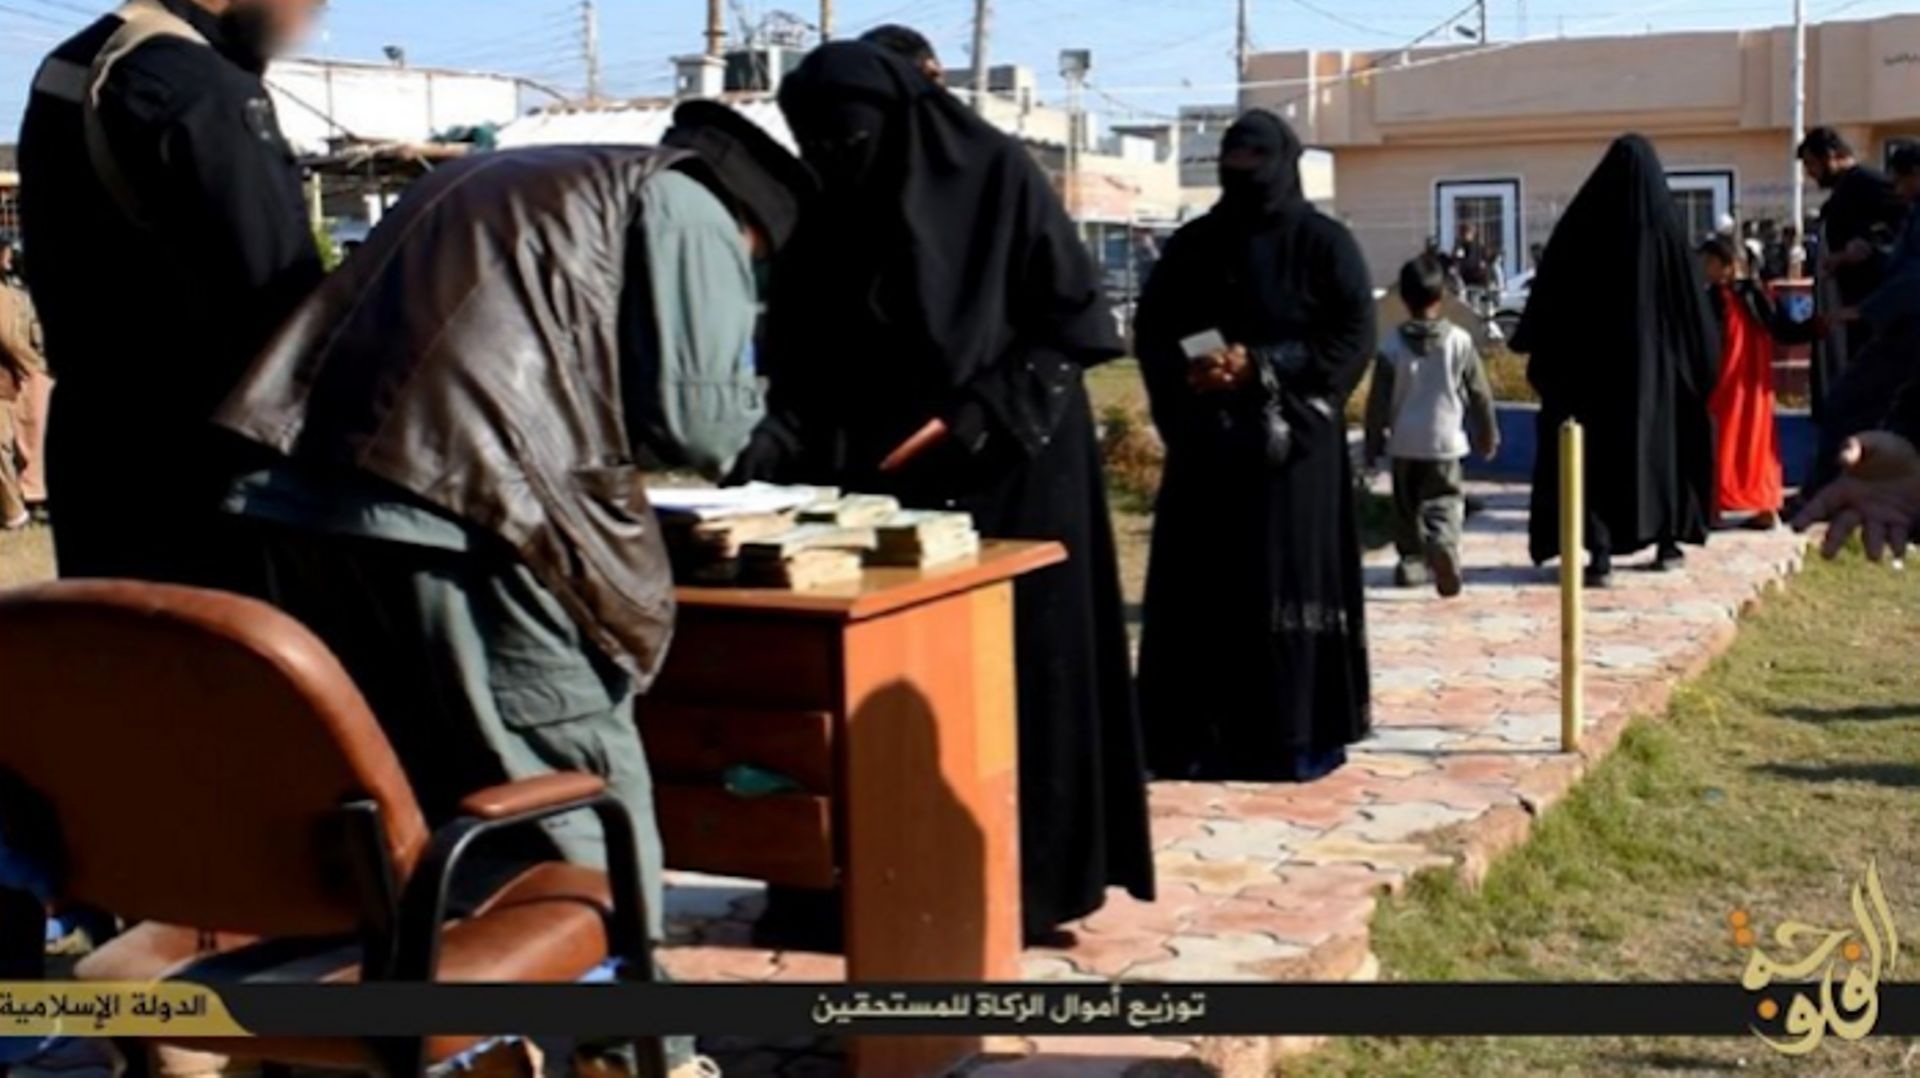 Récolte de la zakât (aumône légale, un des piliers de l'islam) dans la province de Fallujah.